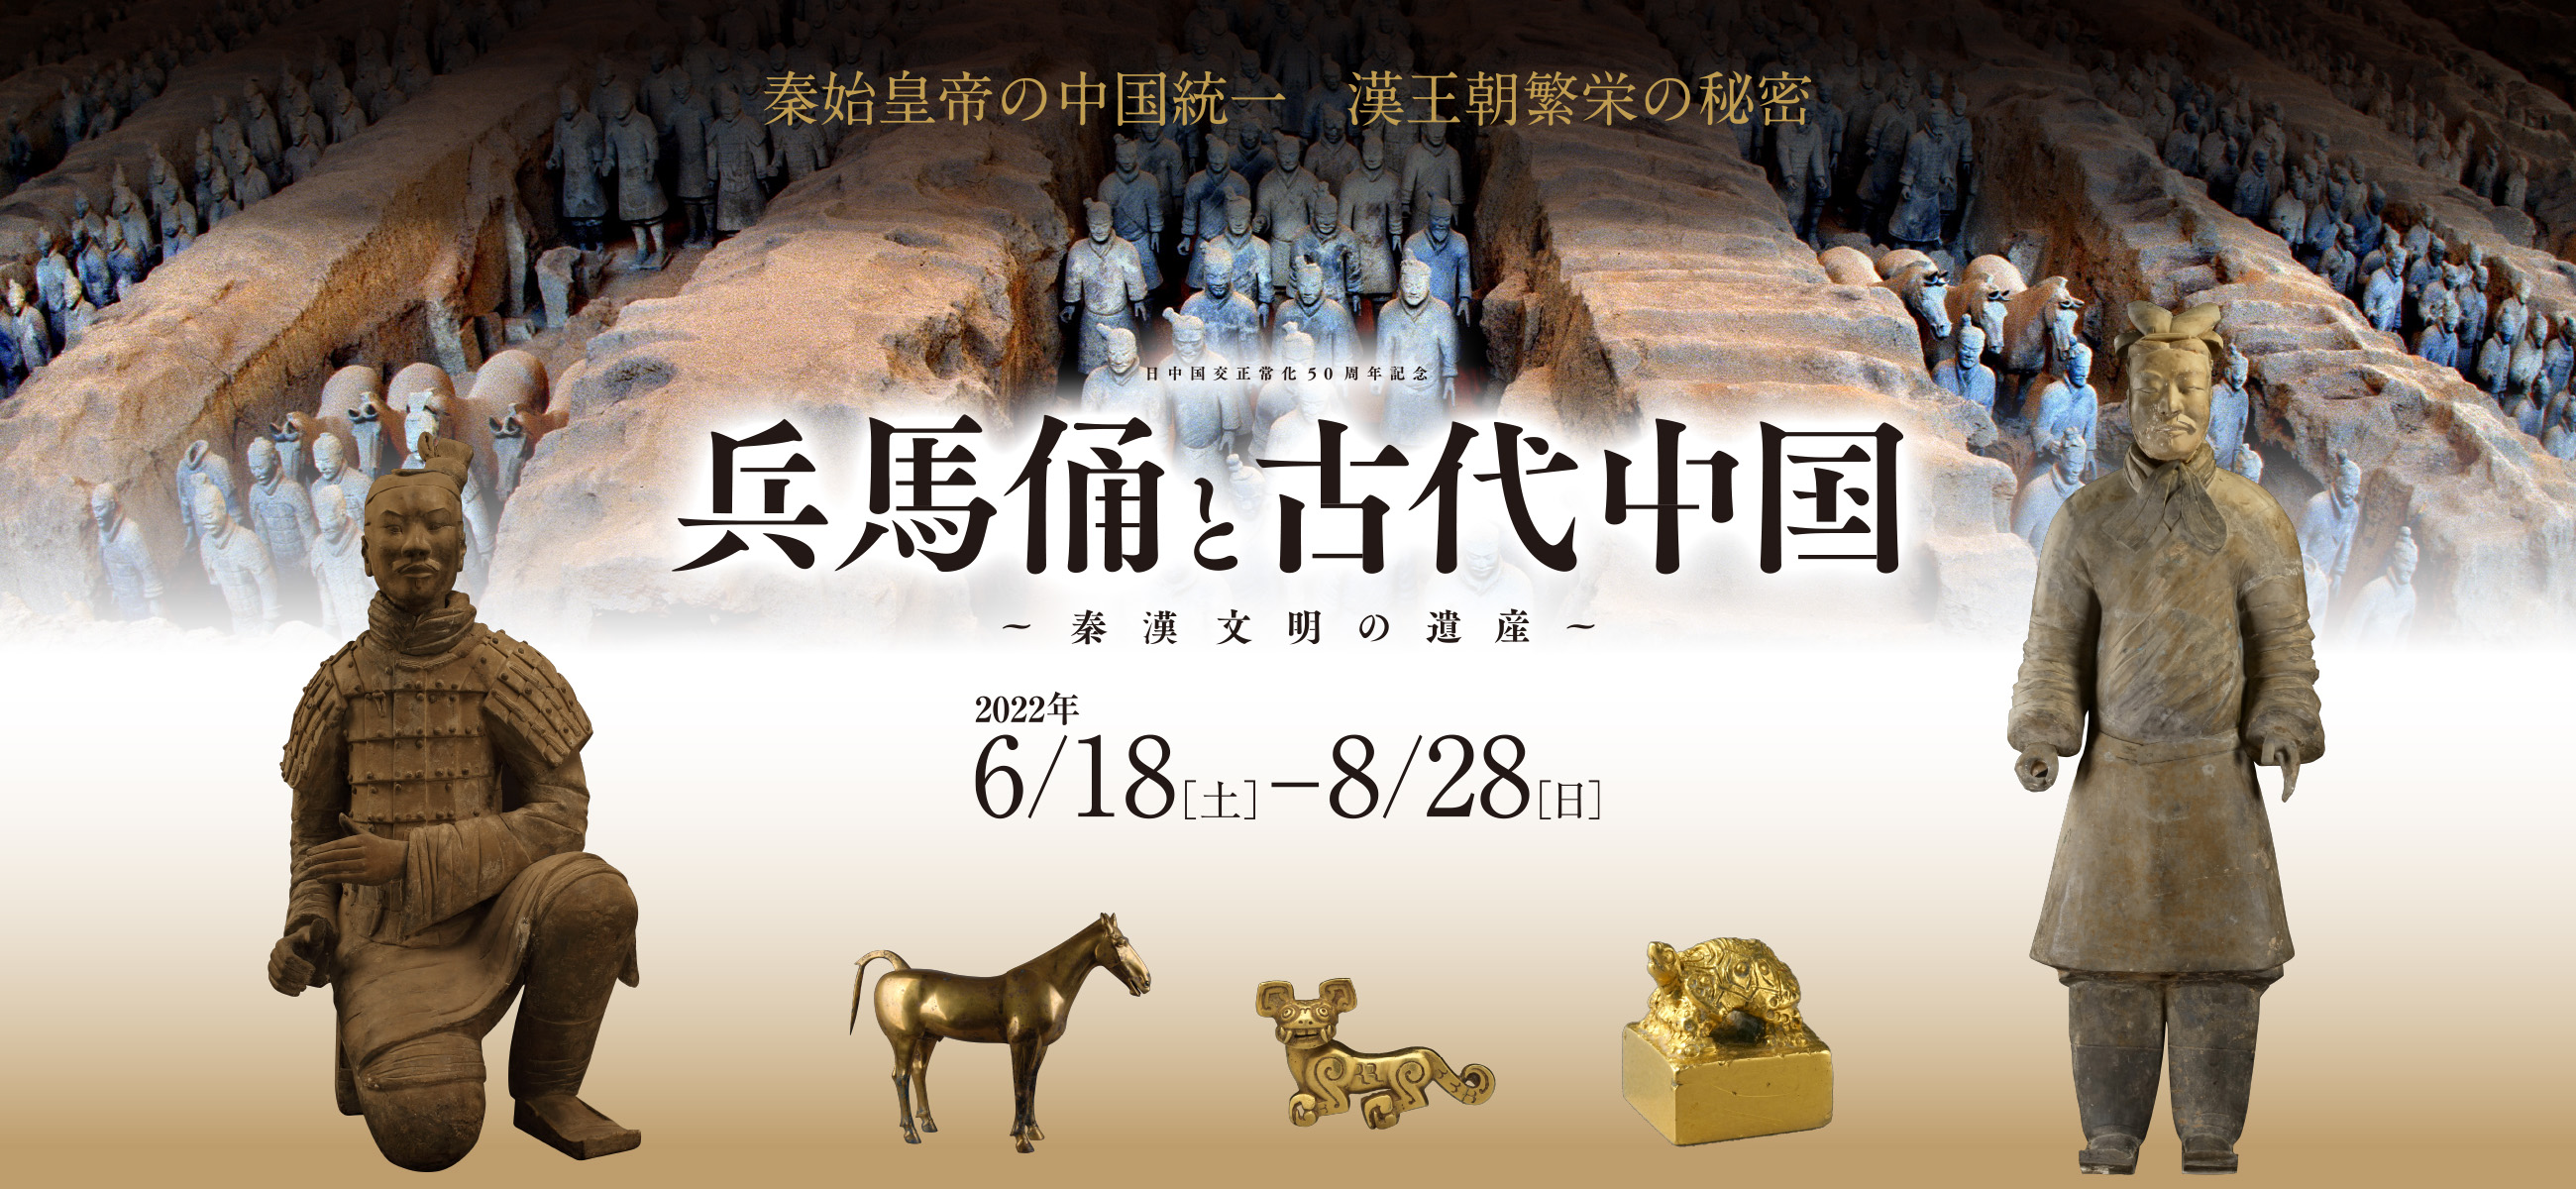 「兵馬俑と古代中国の歴史」